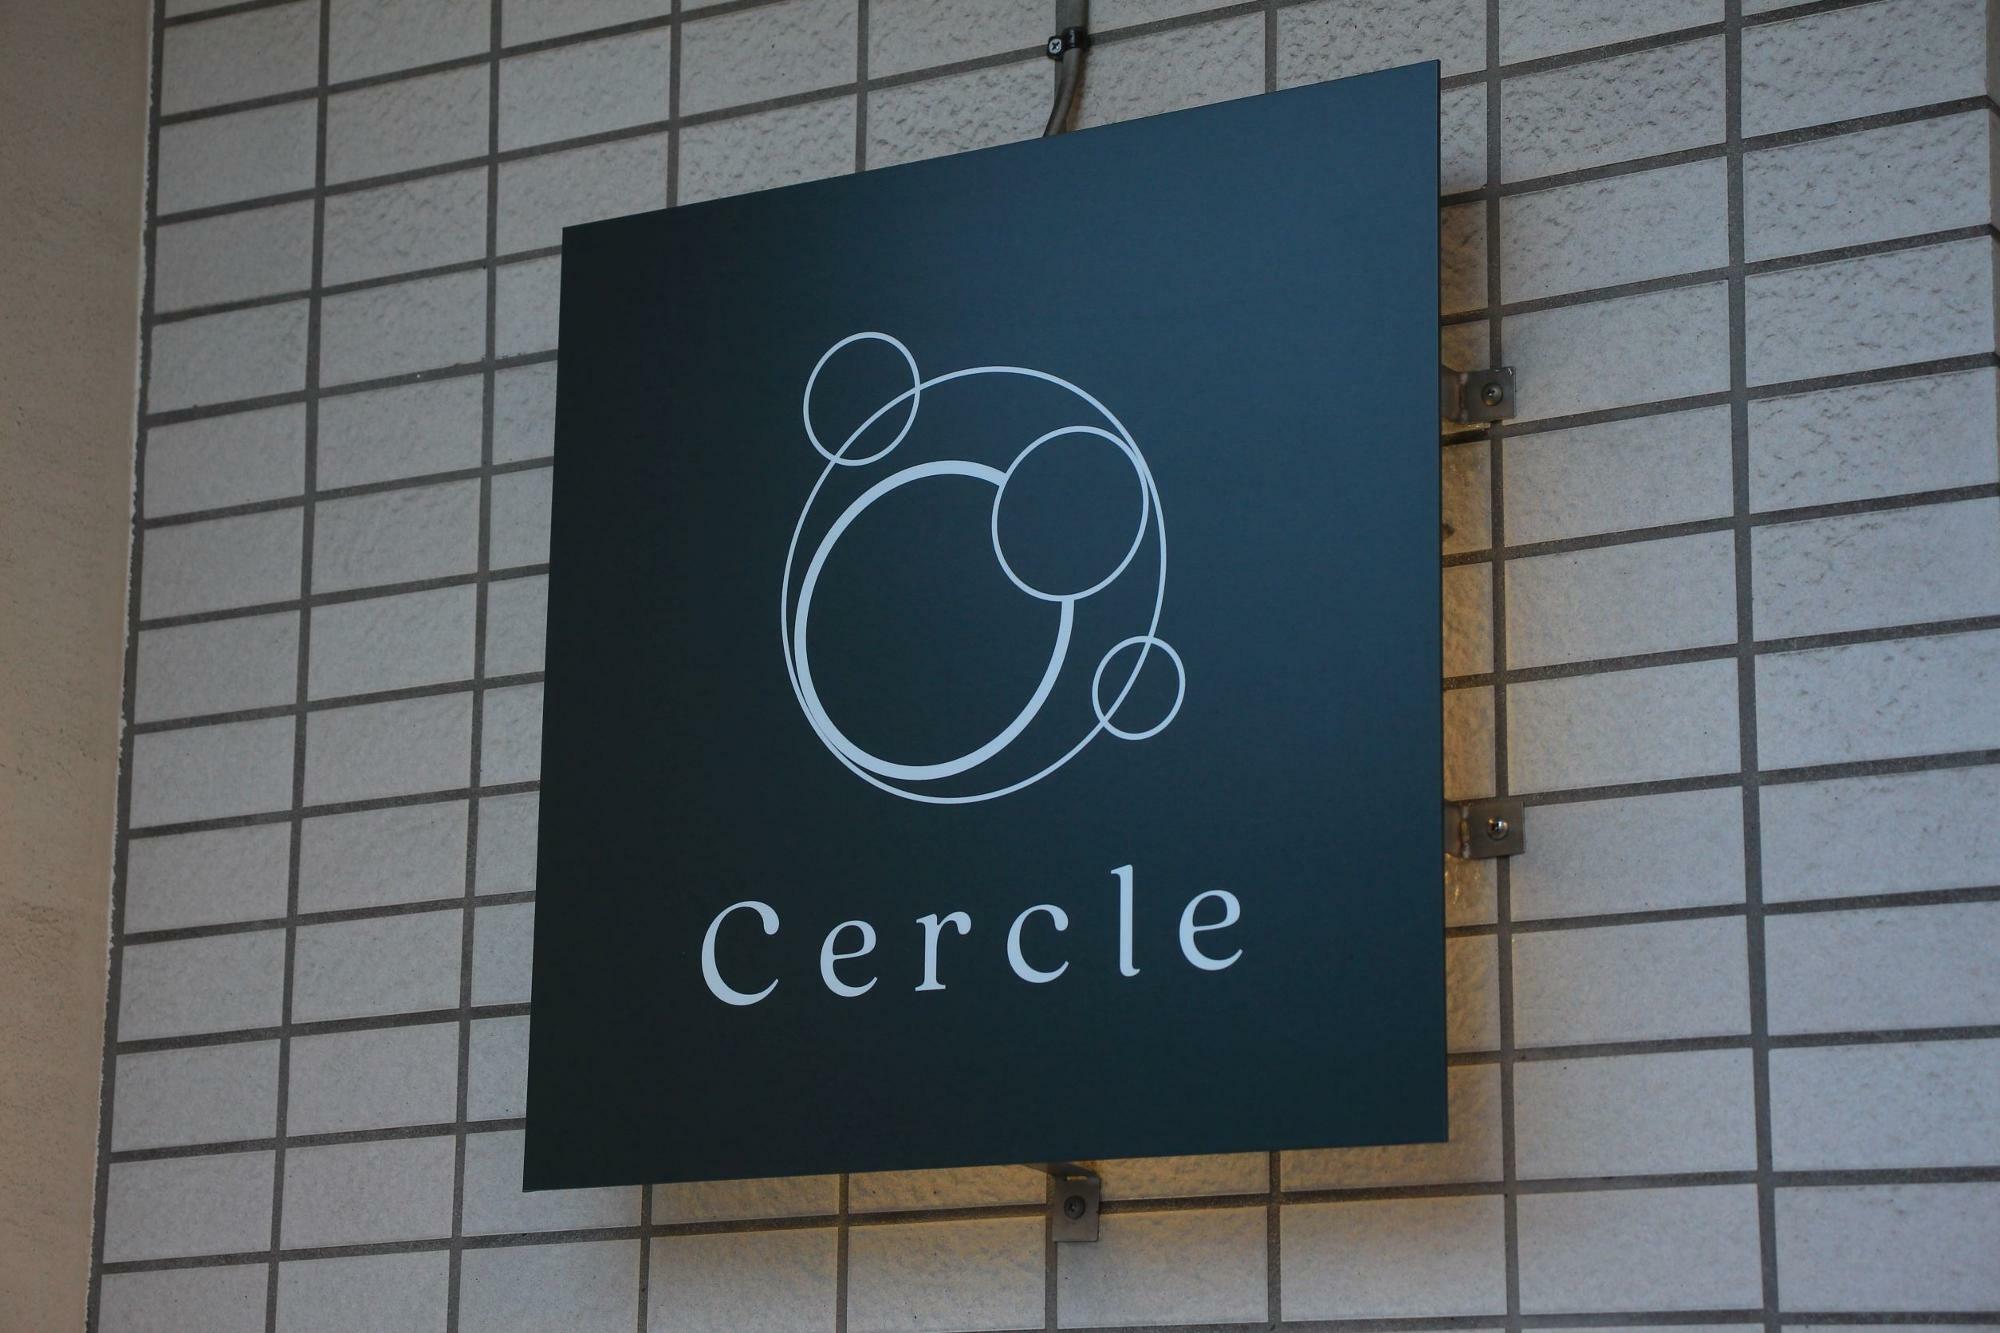 Cercleとは、フランス語で「円」「サークル」という意味